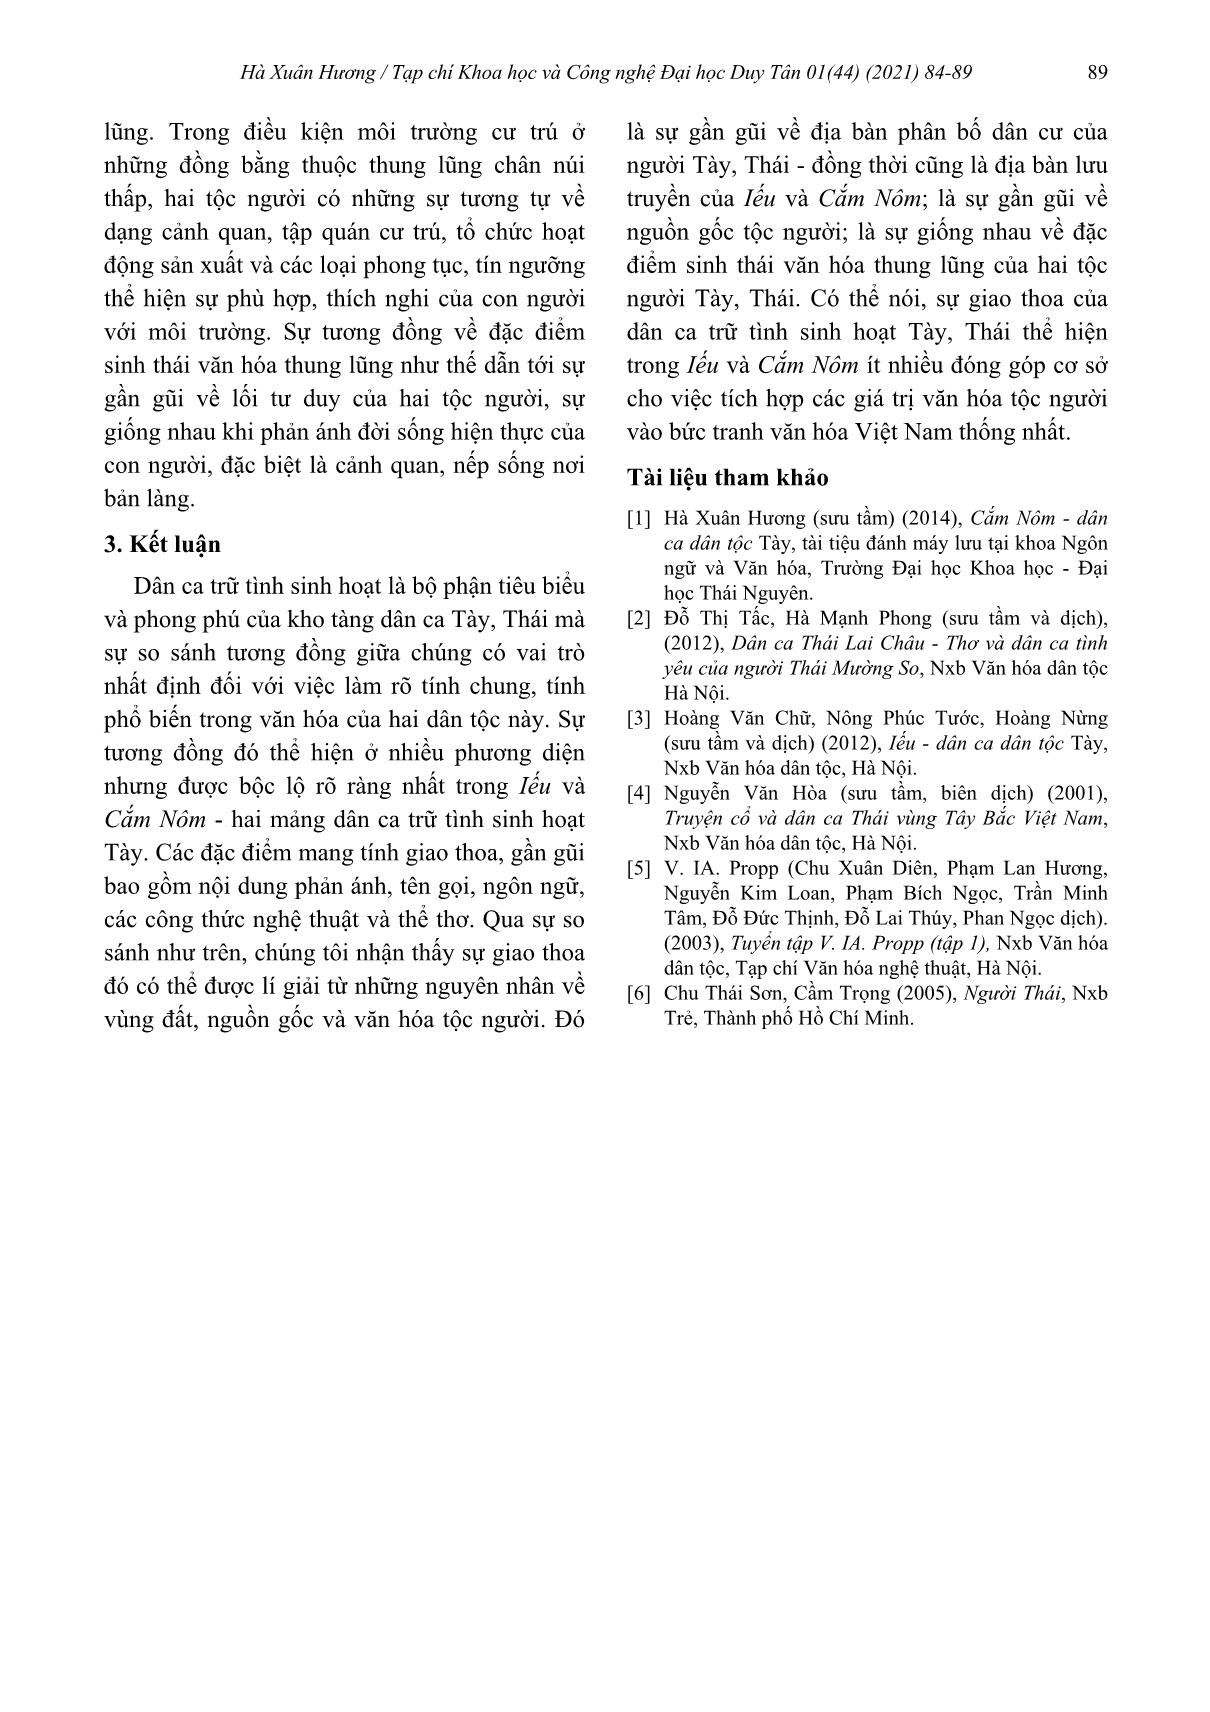 Sự giao thoa của dân ca trữ tình sinh hoạt Tày, Thái trong Iếu và Cắm Nôm trang 6